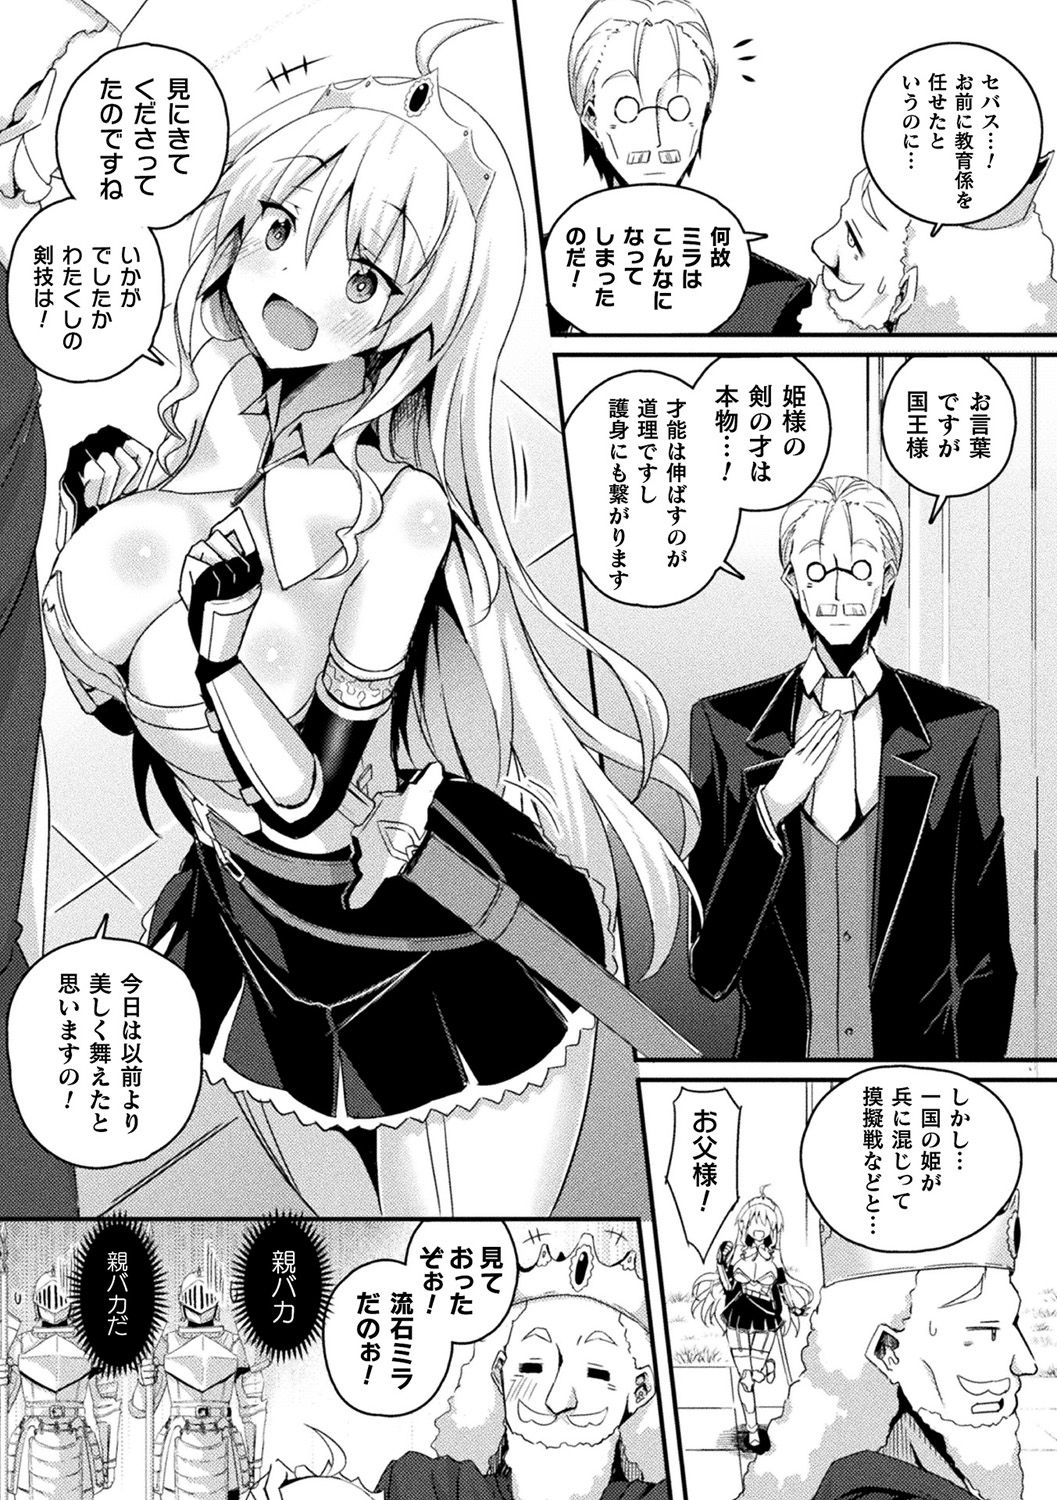 [Anthology] Bessatsu Comic Unreal Ponkotsu Fantasy Heroine H ~Doji o Funde Gyakuten Saretari Ero Trap ni Hamattari!?~ Vol. 2 [Digital] page 3 full